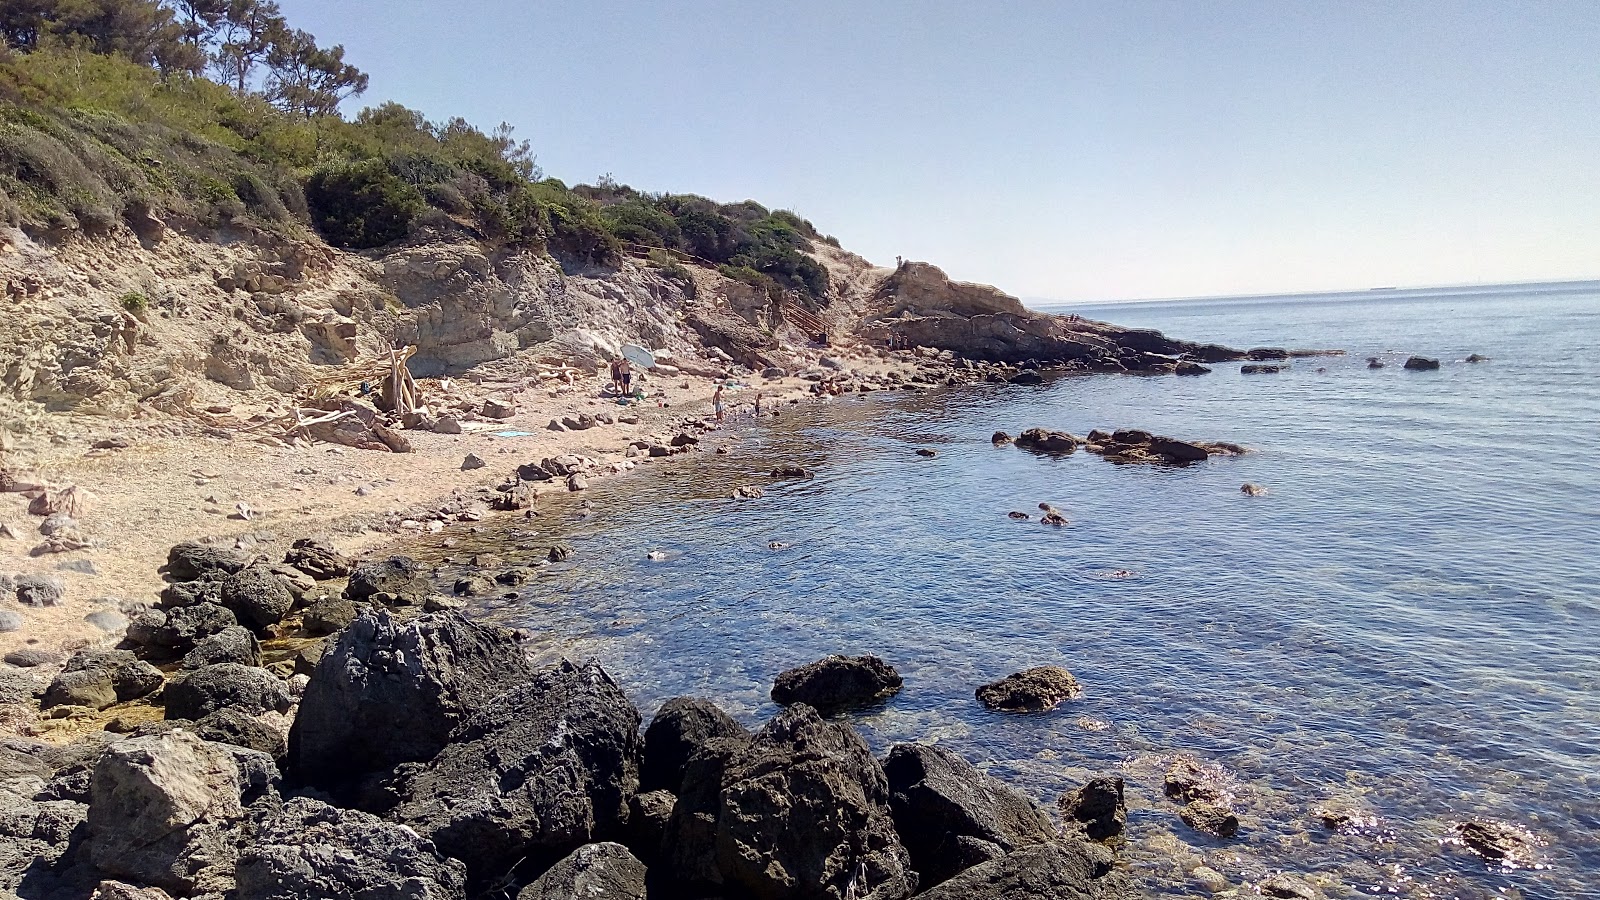 Foto de Spiaggia La Piletta ubicado en área natural